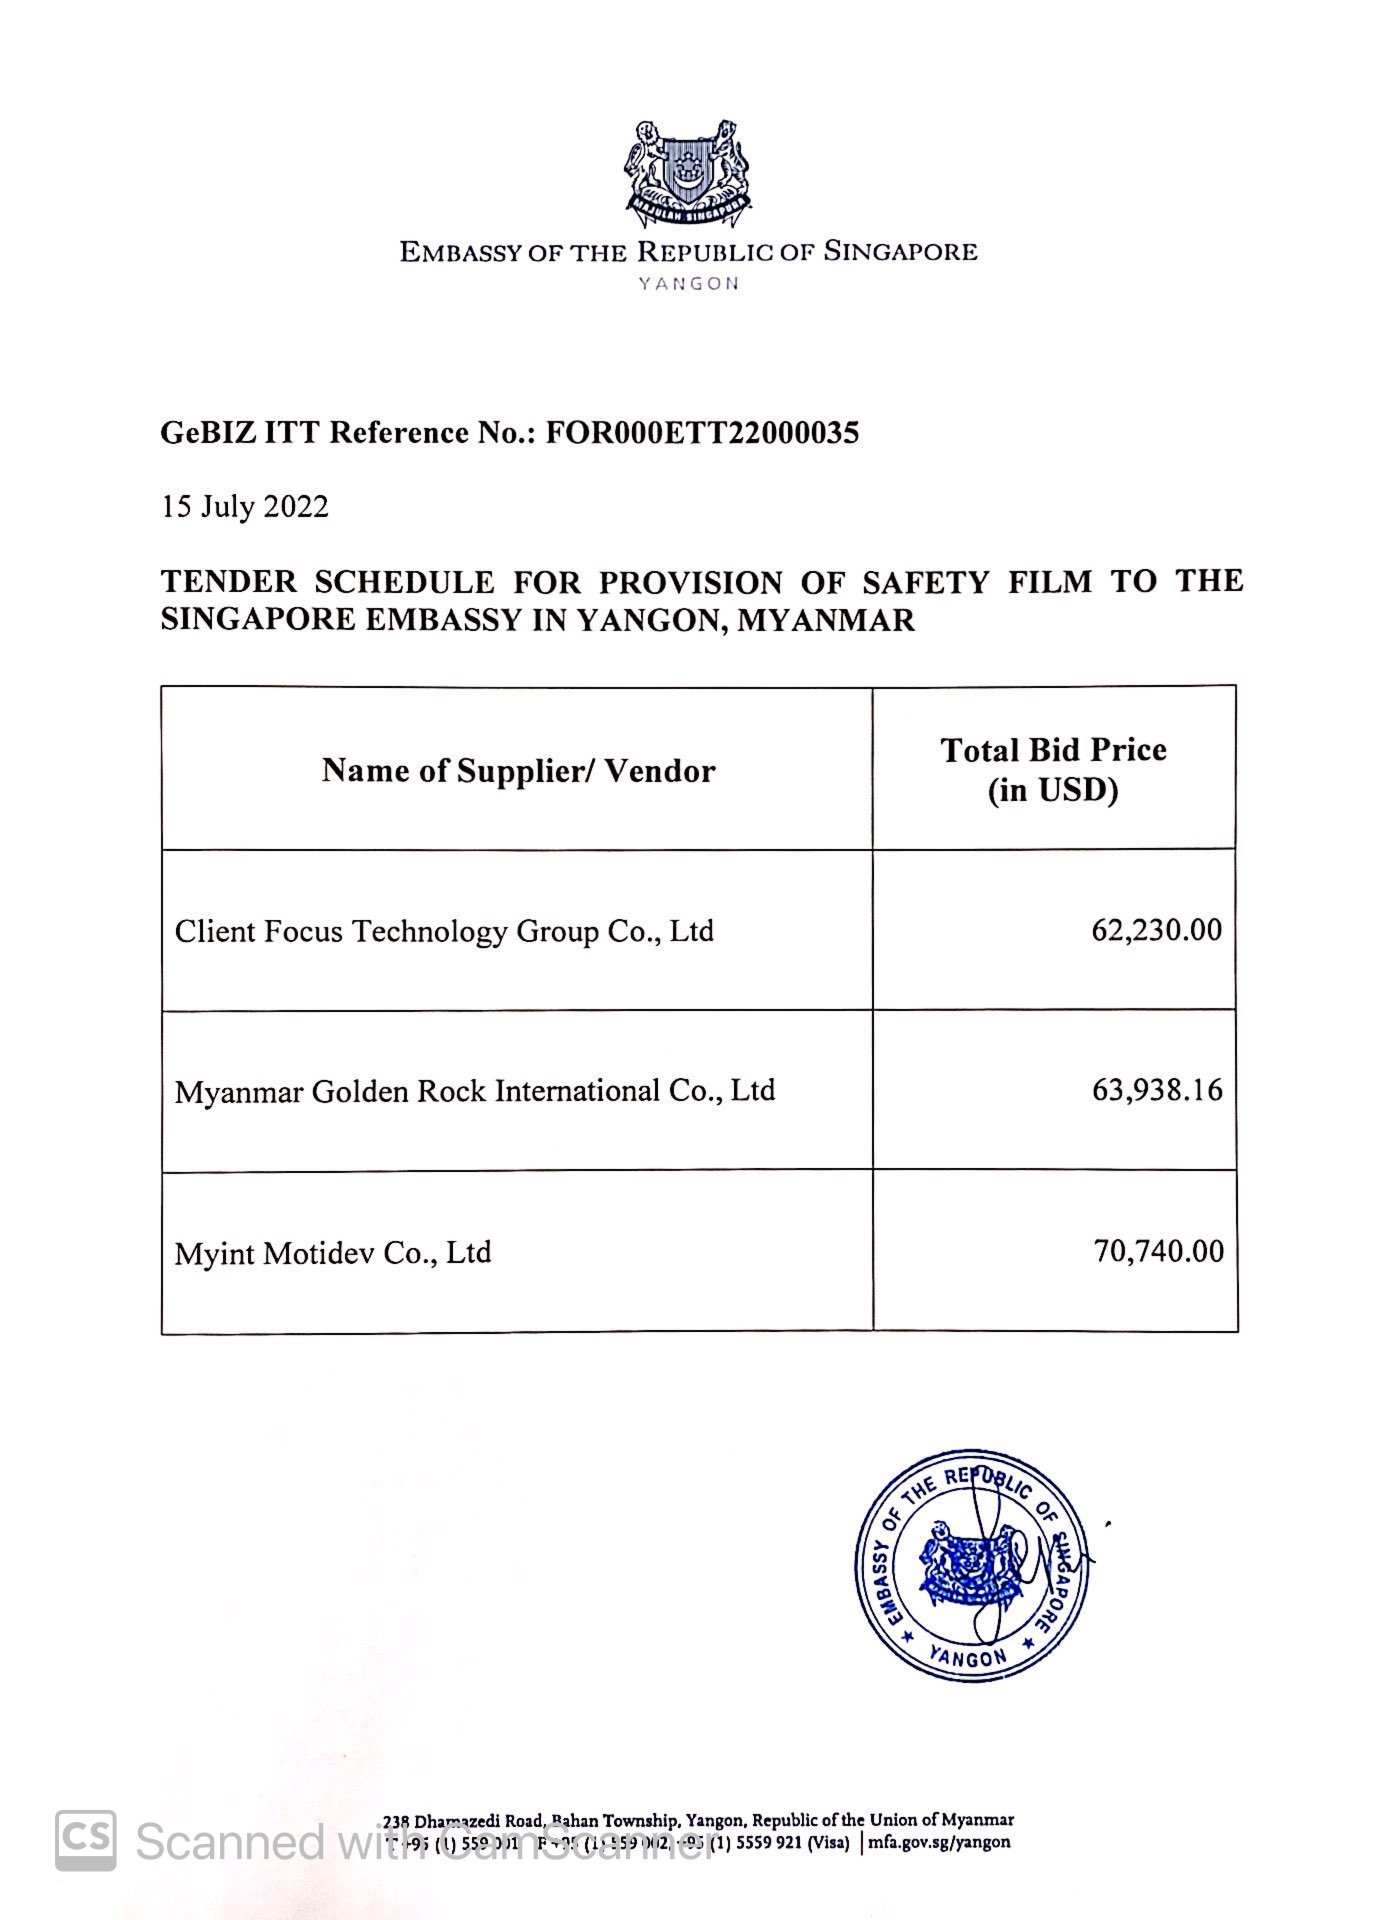 Safety Film ITT - Tender Schedule